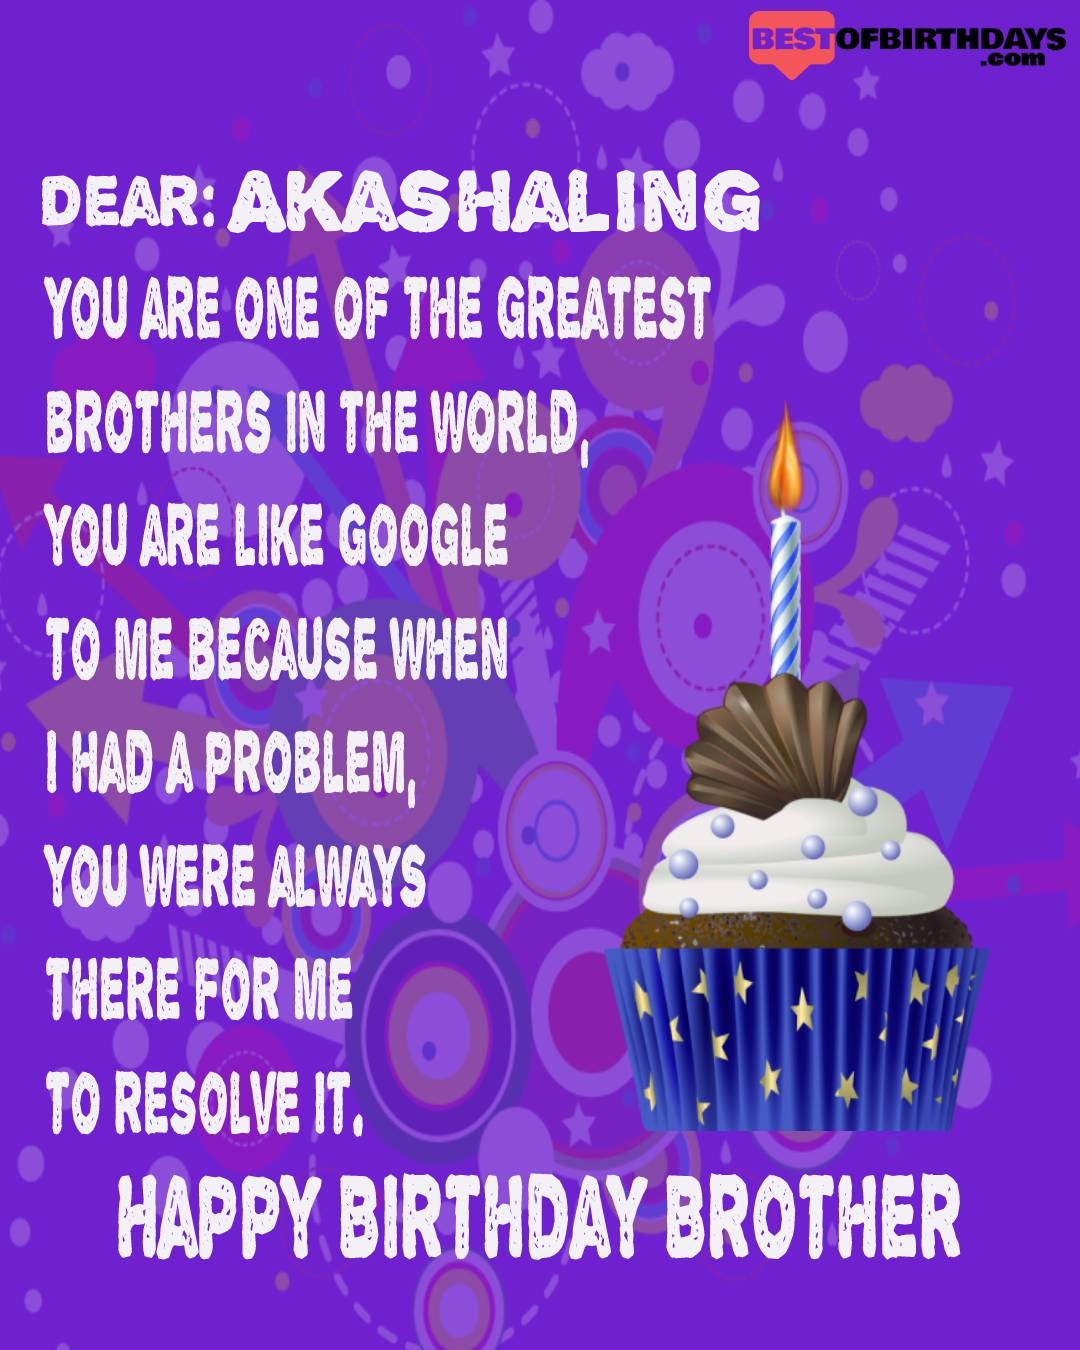 Happy birthday akashaling bhai brother bro